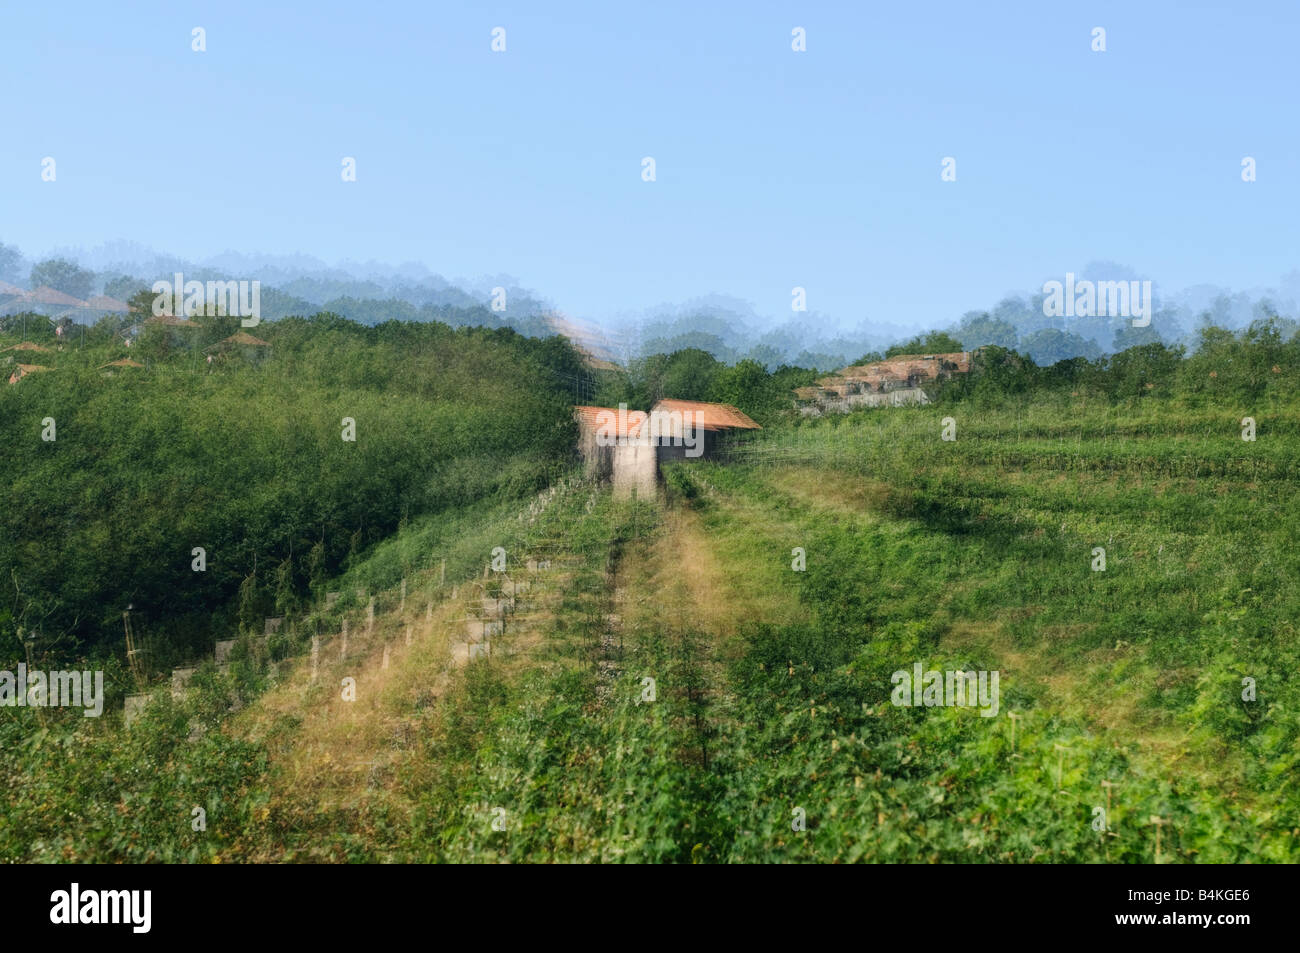 La exposición múltiple efecto especial secuencia ampliada de una granja de construcción Foto de stock